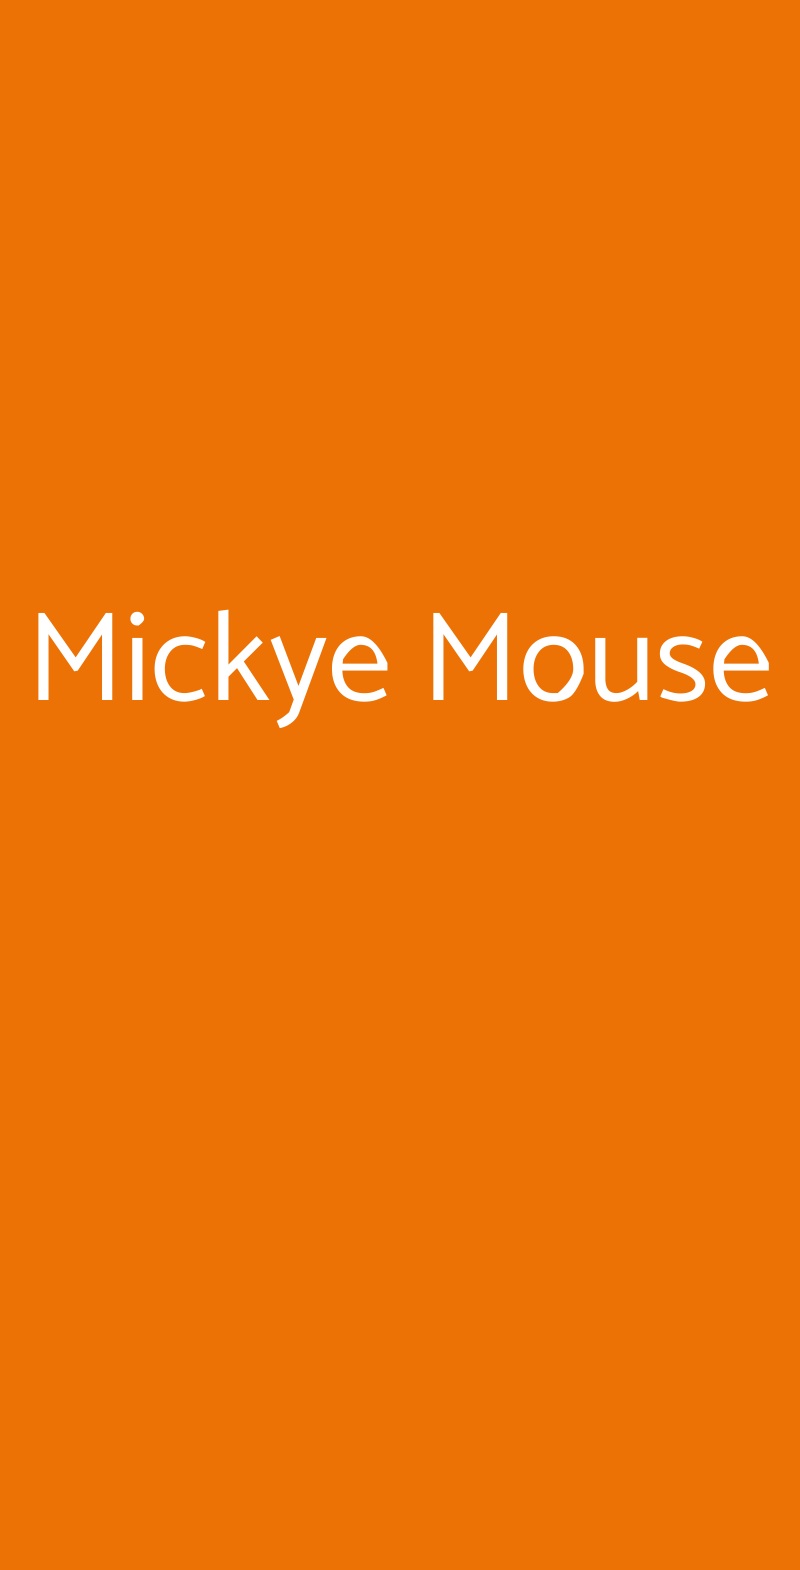 Mickye Mouse Giaglione menù 1 pagina